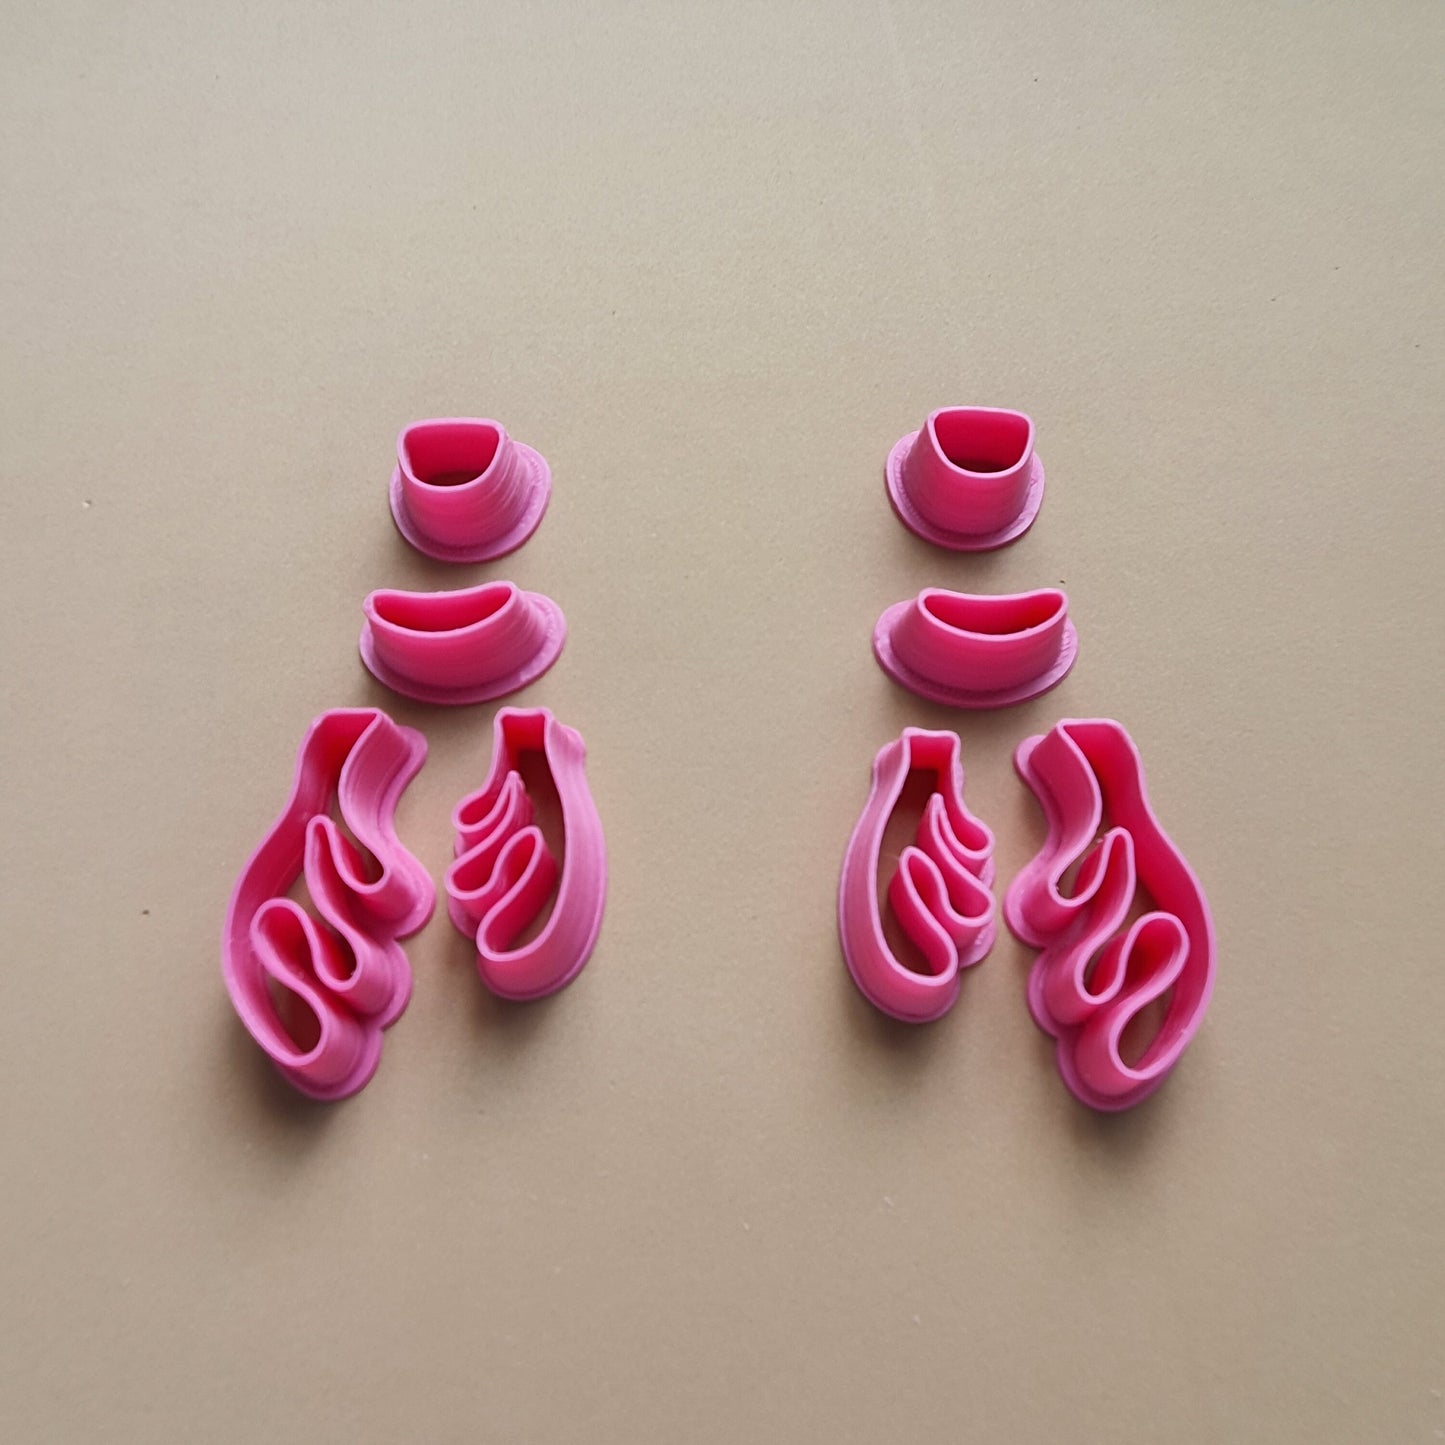 Earrings "Reindeer" Polymer clay 3D cutters set for pair earrings